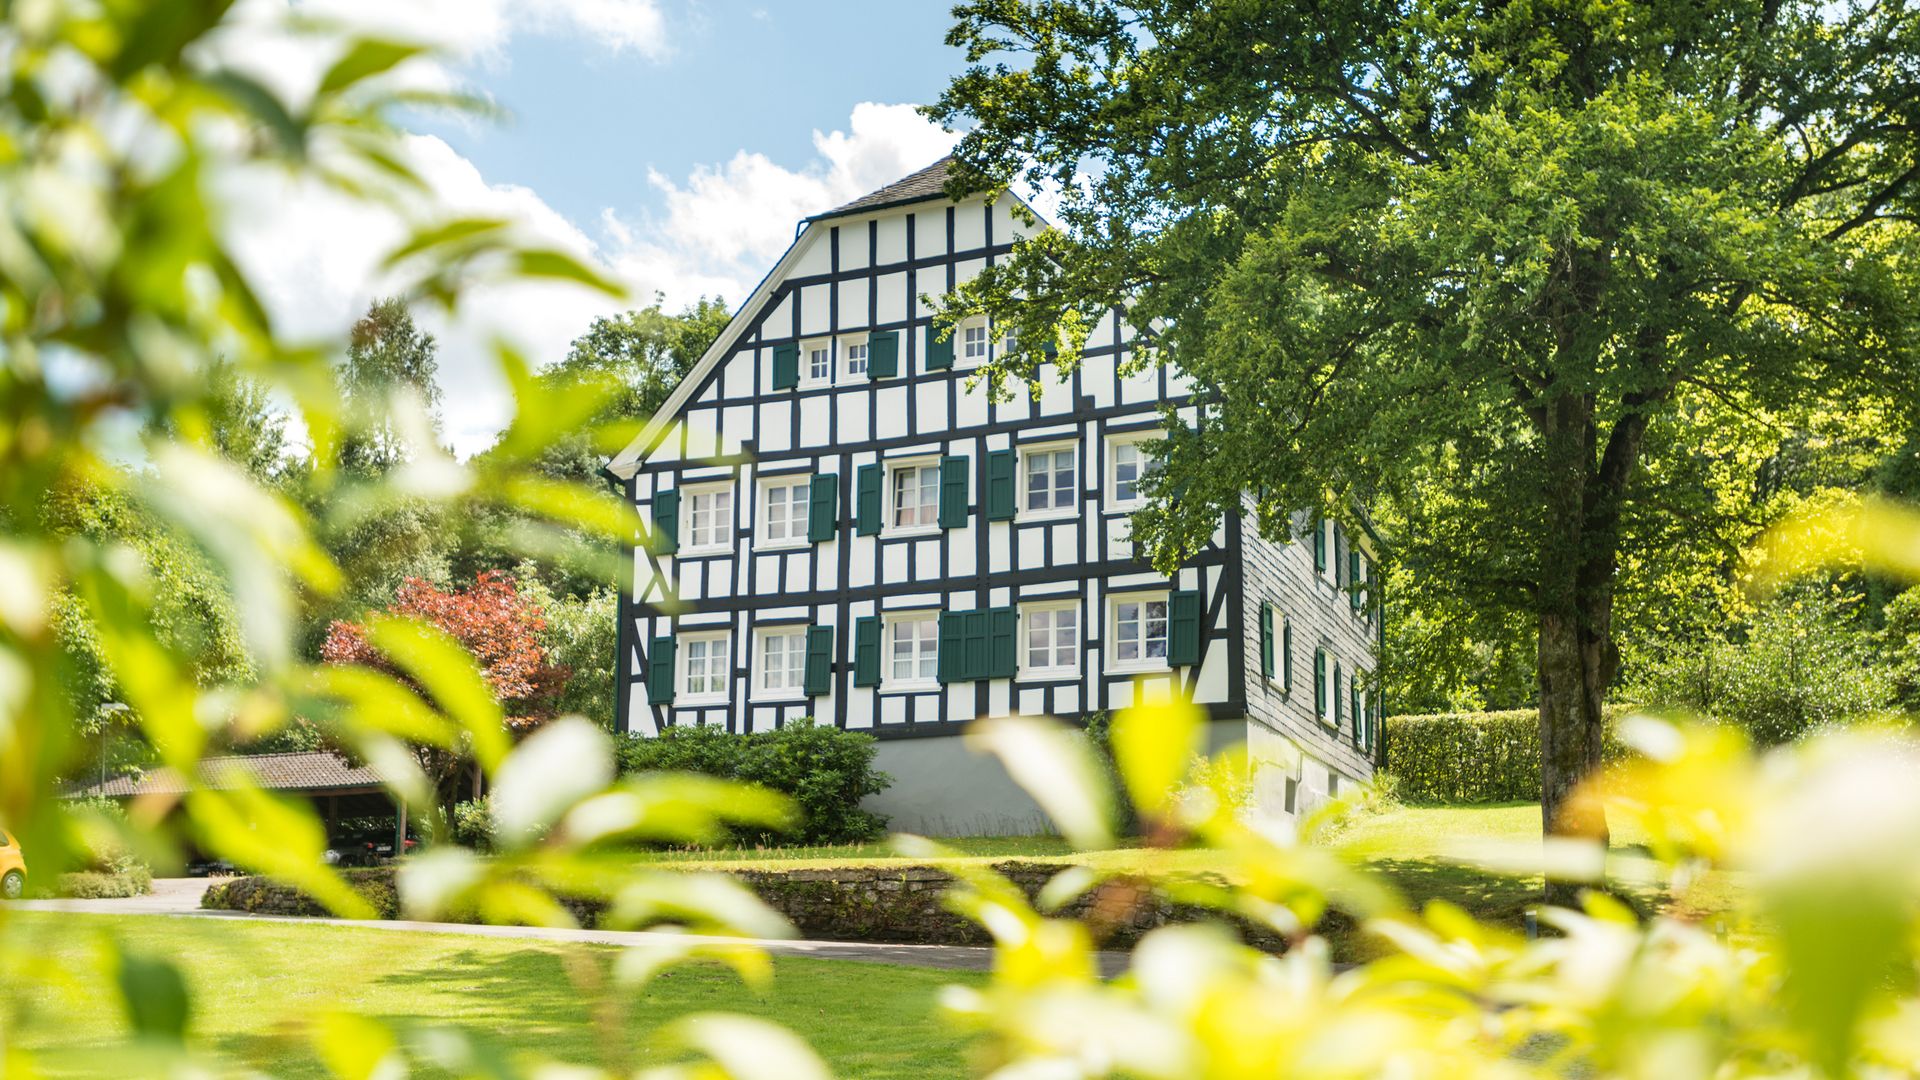 Blick durch Blätter auf ein Fachwerkhaus mit grünen Fensterläden auf einer Wiese. Neben dem Haus steht ein Baum. 